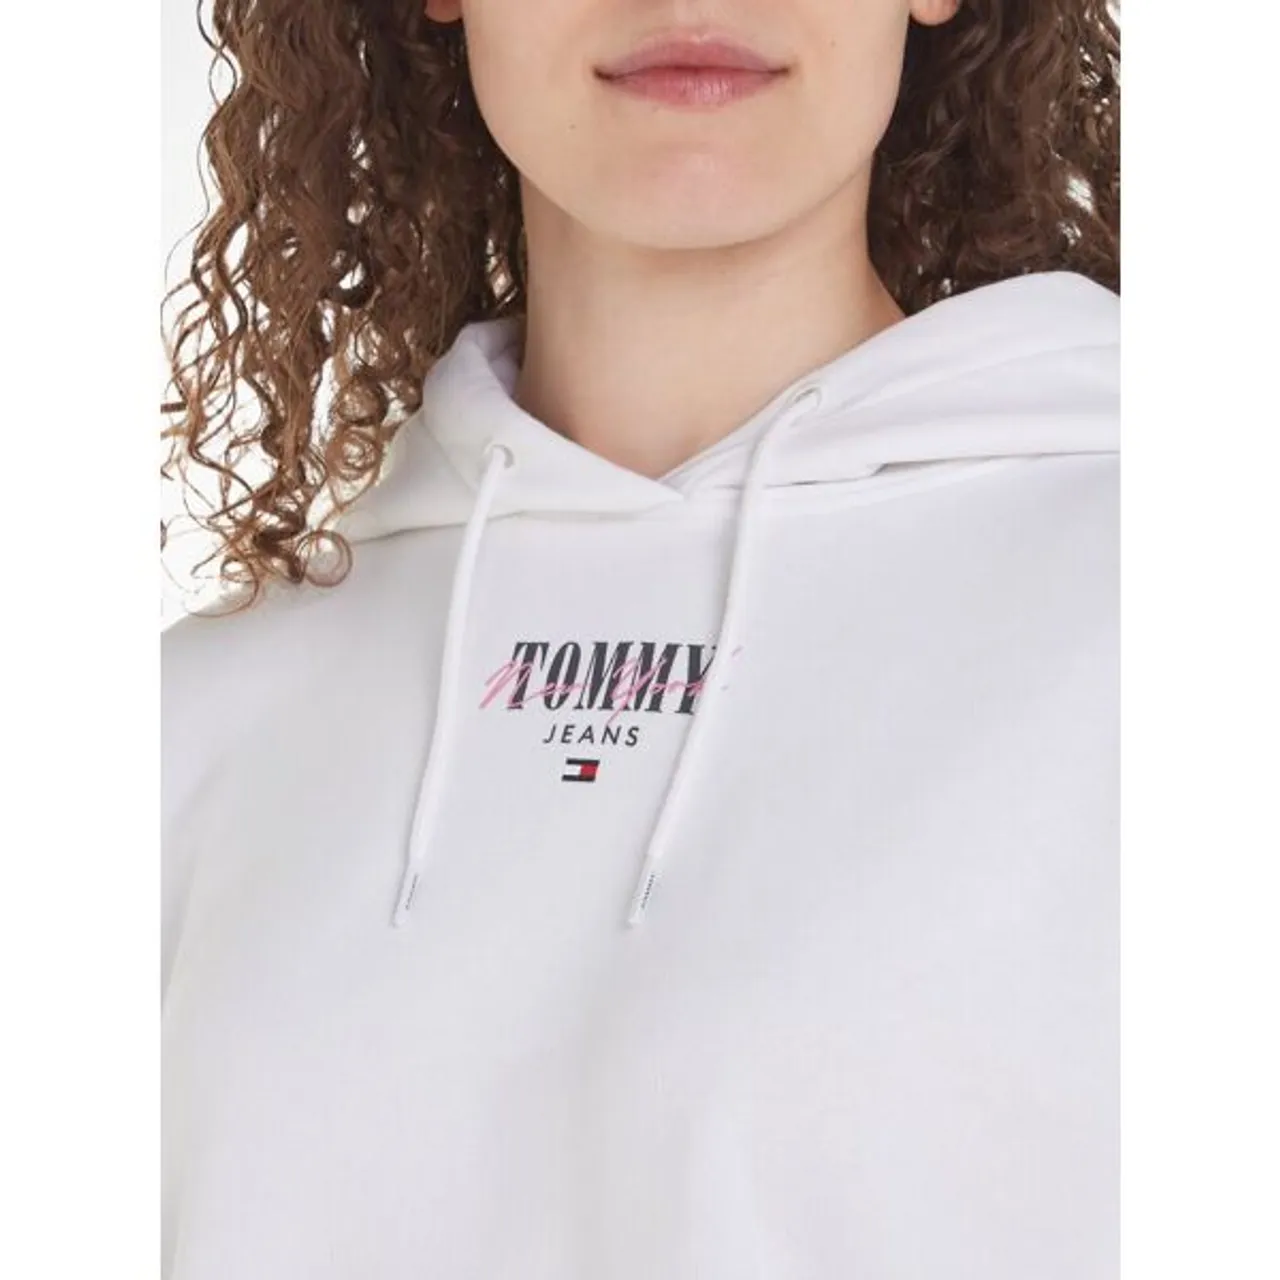 Kapuzensweatshirt TOMMY JEANS "TJW RLX ESSENTIAL LOGO HOODIE" Gr. L (40), weiß (white) Damen Sweatshirts mit Tommy Jeans Logo-Schriftzug & Flag